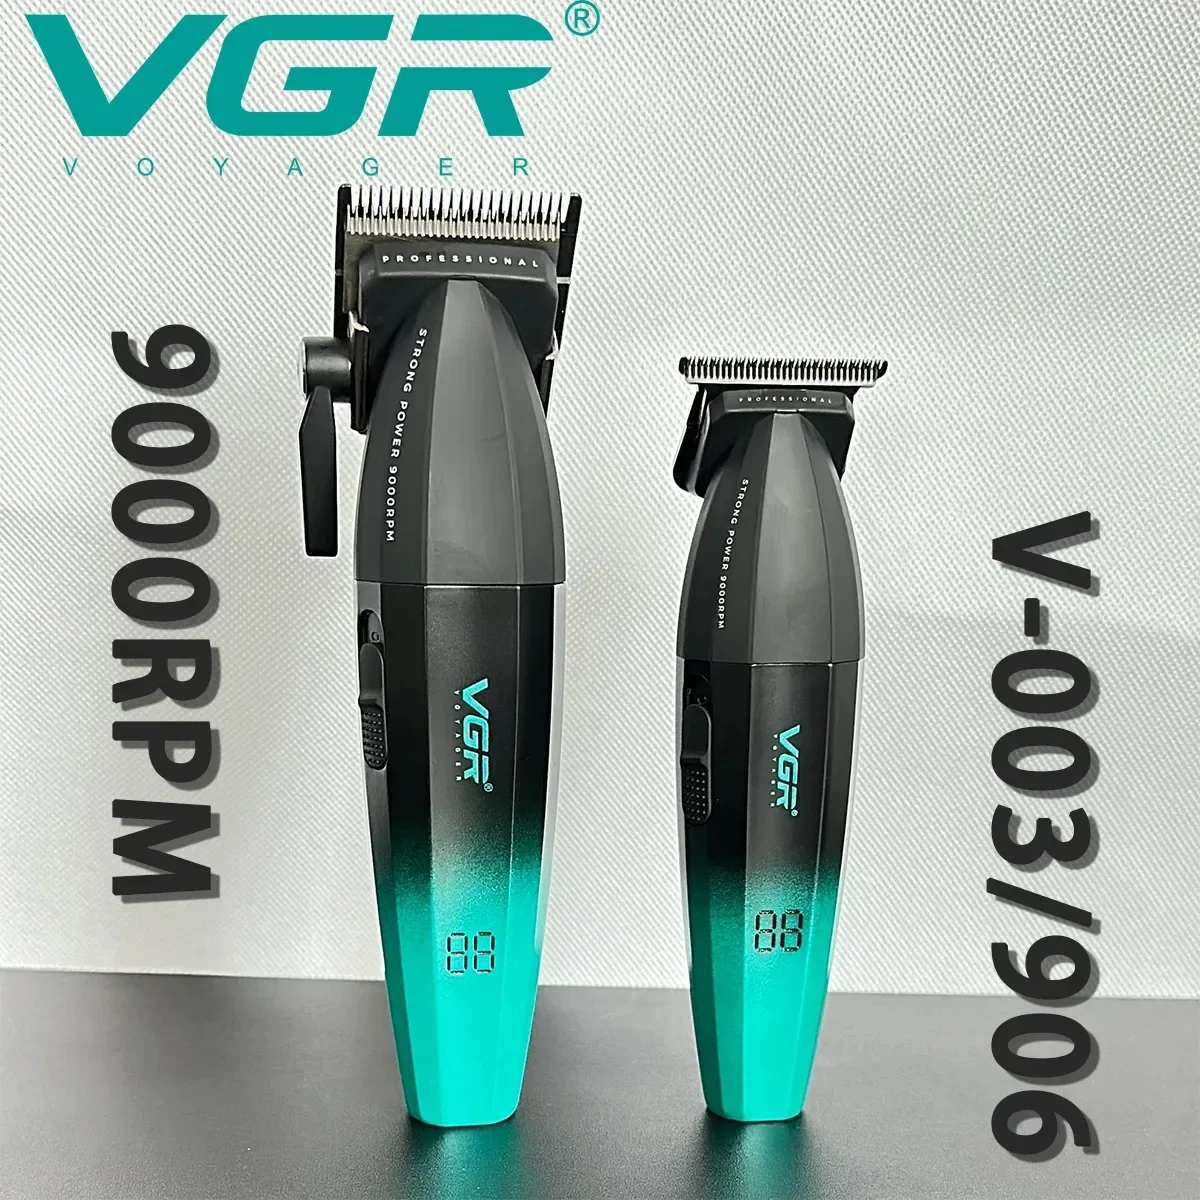 

Машинка для стрижки волос VGR003, 9000 об/мин, 5 В